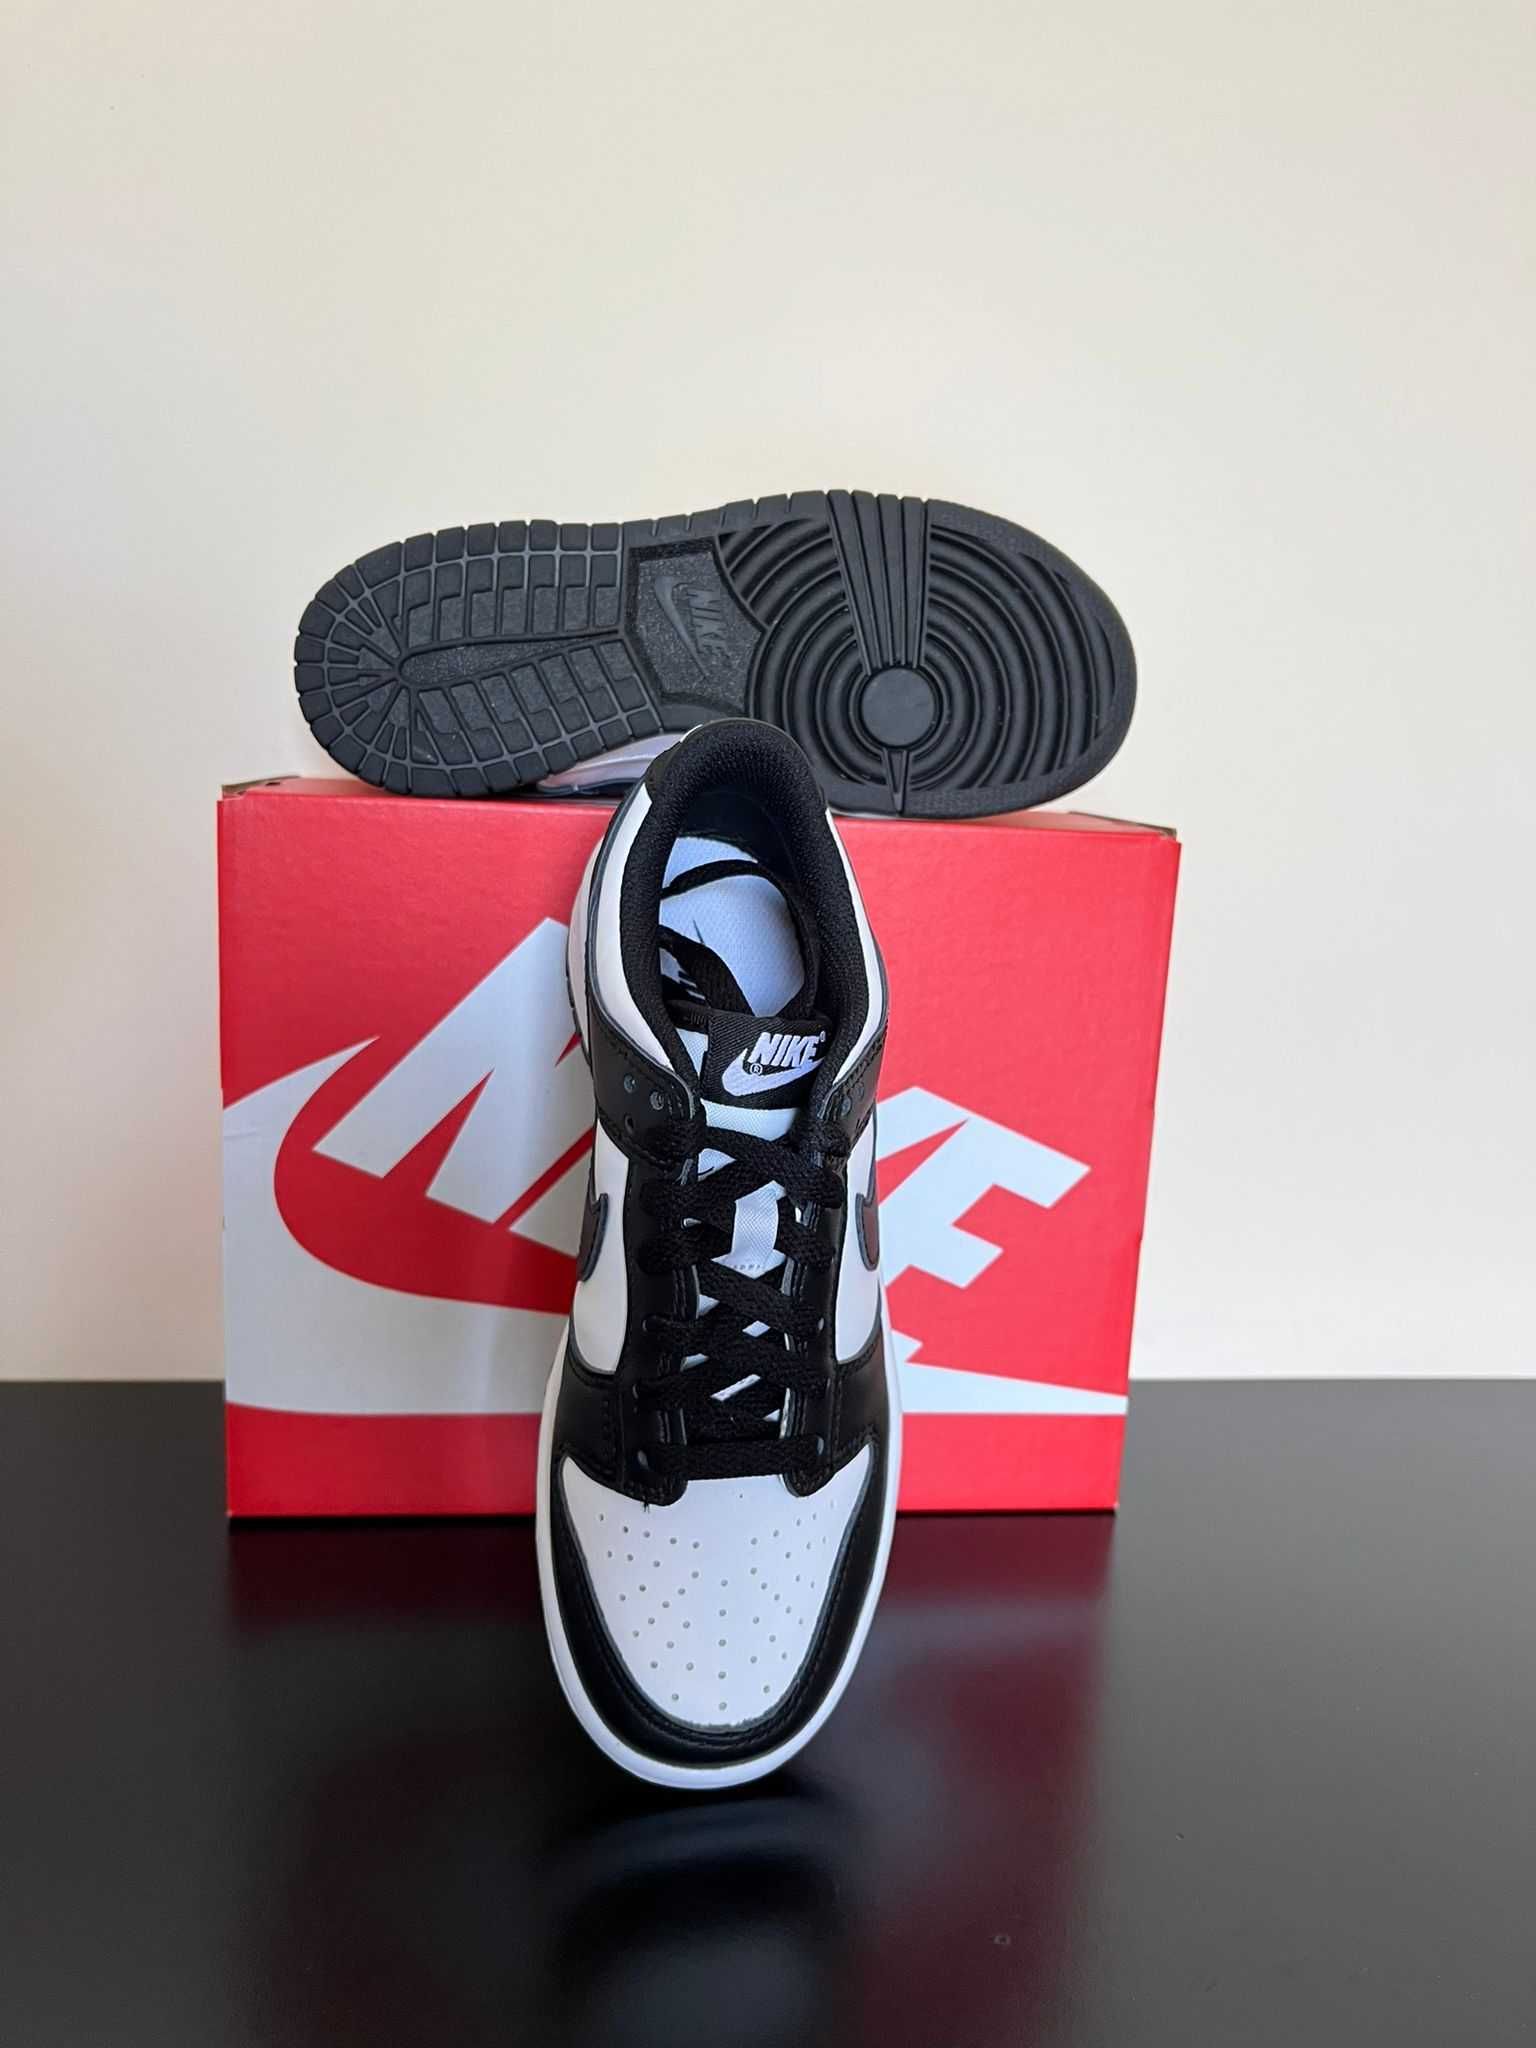 Nike Dunk Low Retro White Black GS - EU36, 38.5 - 830RON